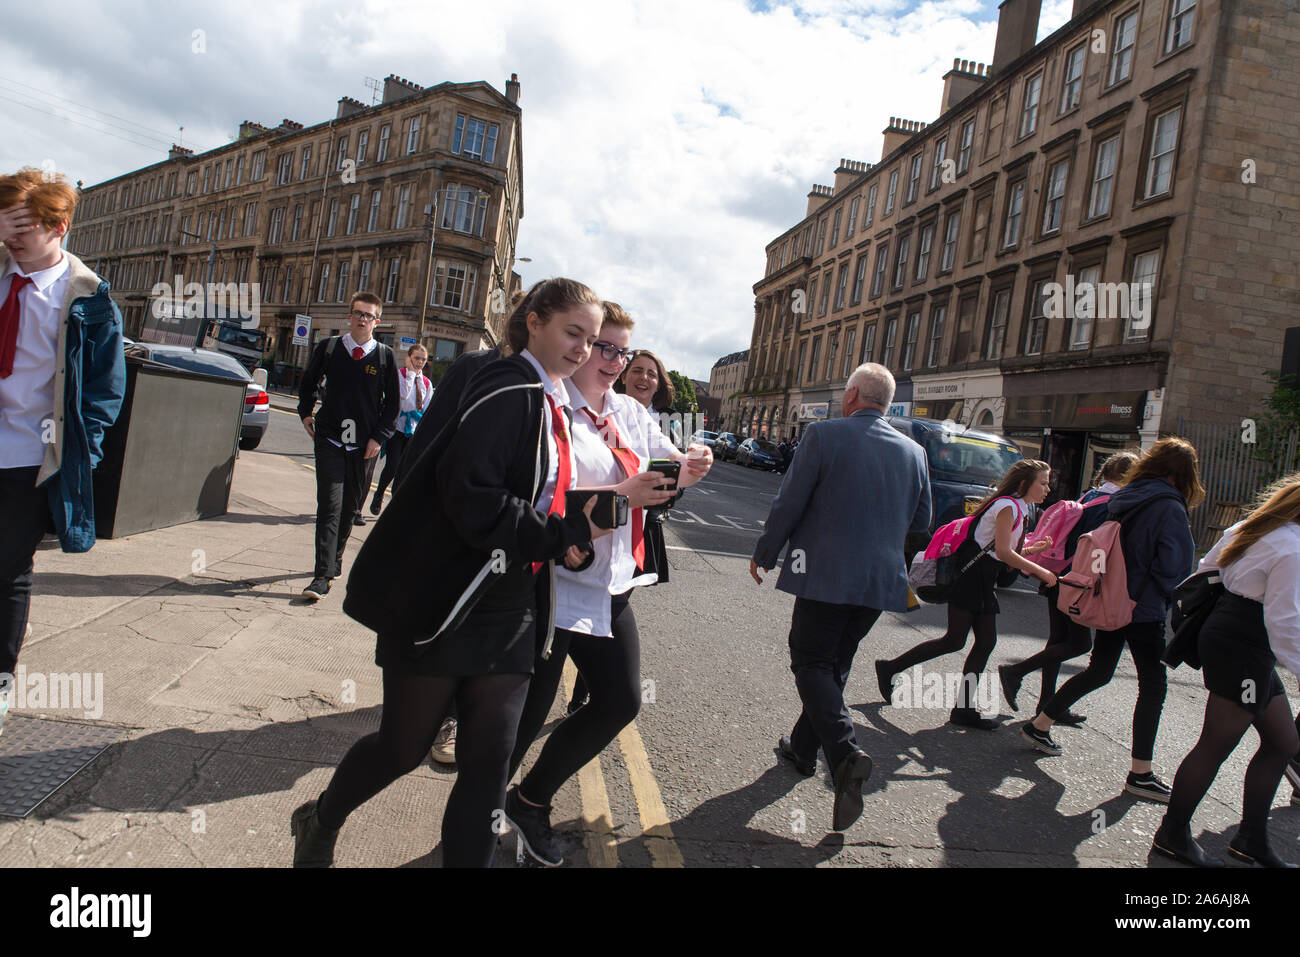 Schüler gehen nach einem Schultag nach Hause, Glasgow, Schottland, Großbritannien. / Students going home after a day at school, Glasgow, Scotland. Stock Photo